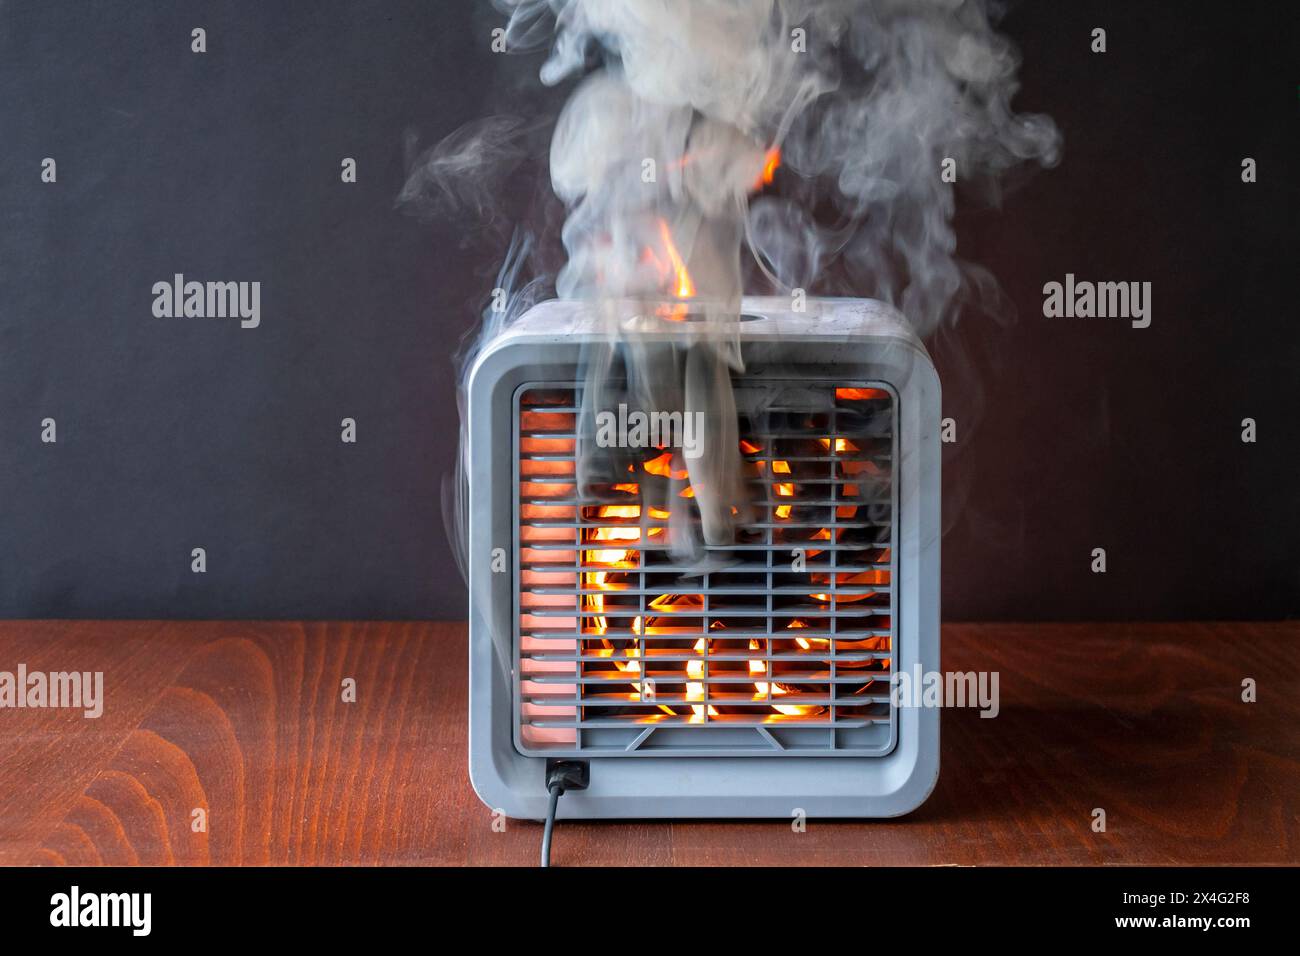 Il purificatore d'aria brucia con fuoco, fiamme e scintille, fumo nero. La causa dell'incendio nell'appartamento, un cortocircuito, un'attrezzatura difettosa. Foto Stock